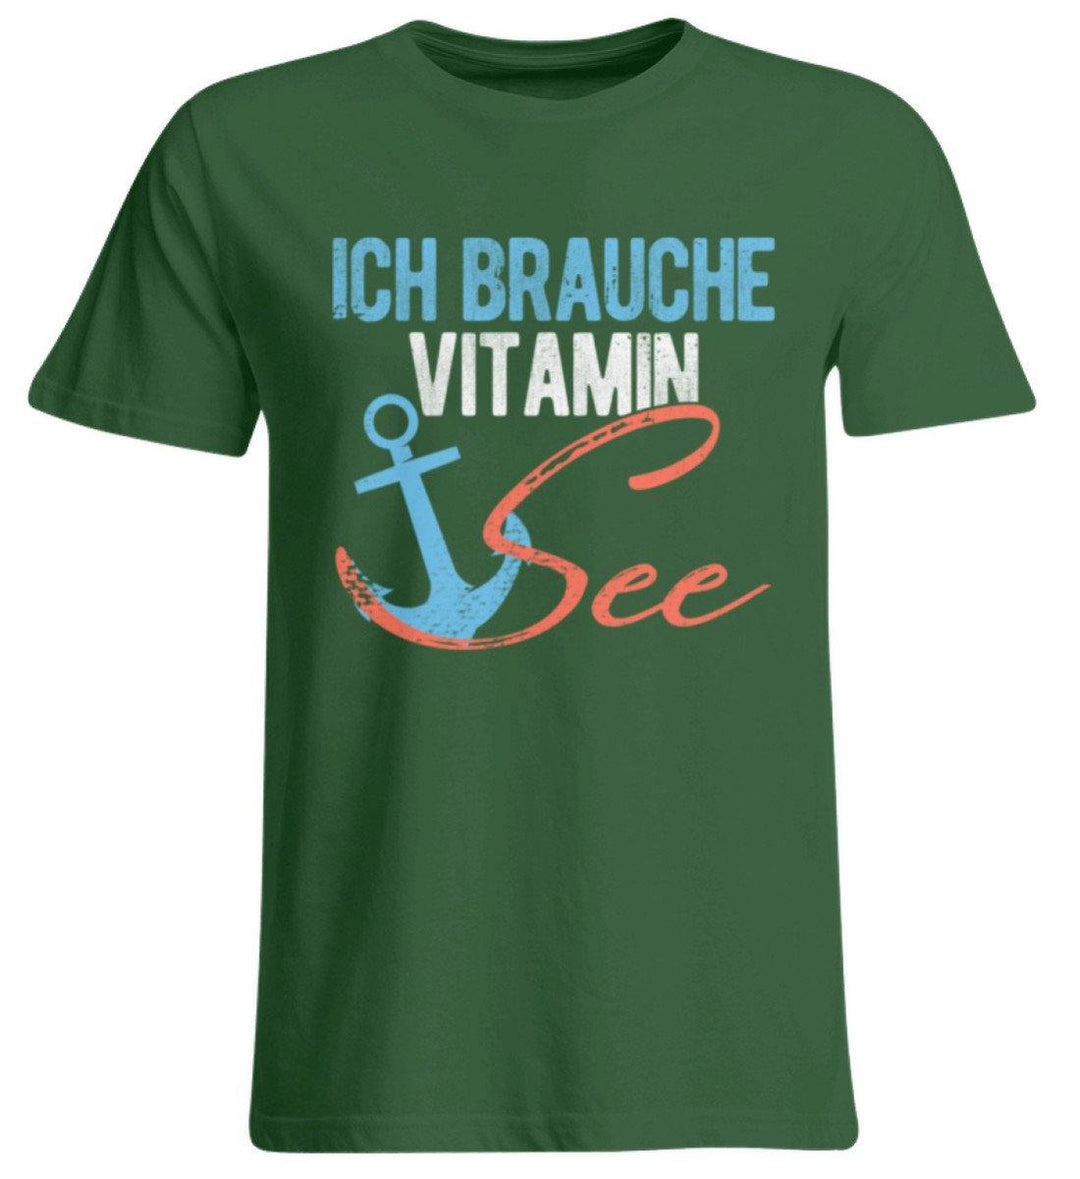 Vitamin See - Norddeutsch   - Übergrößenshirt - Words on Shirts Sag es mit dem Mittelfinger Shirts Hoodies Sweatshirt Taschen Gymsack Spruch Sprüche Statement